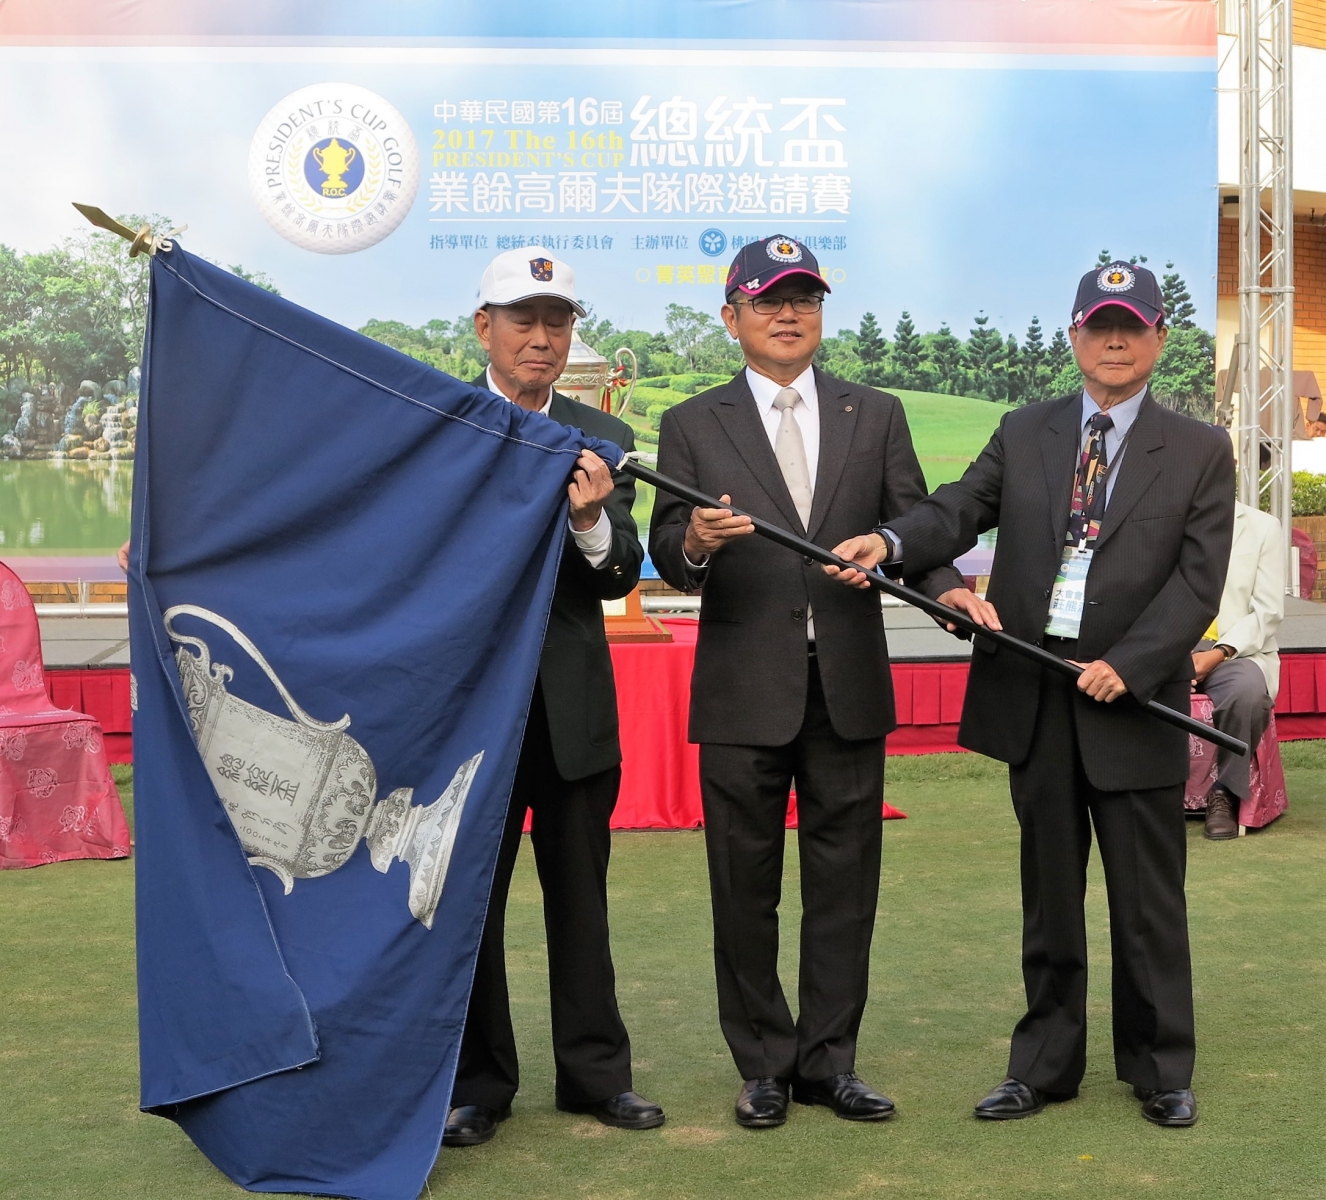 今年總統盃大會會長莊熊源(右一)將大會會旗轉交給明年承辦的台灣高爾夫俱樂部會長陳茂仁(中間)手上。